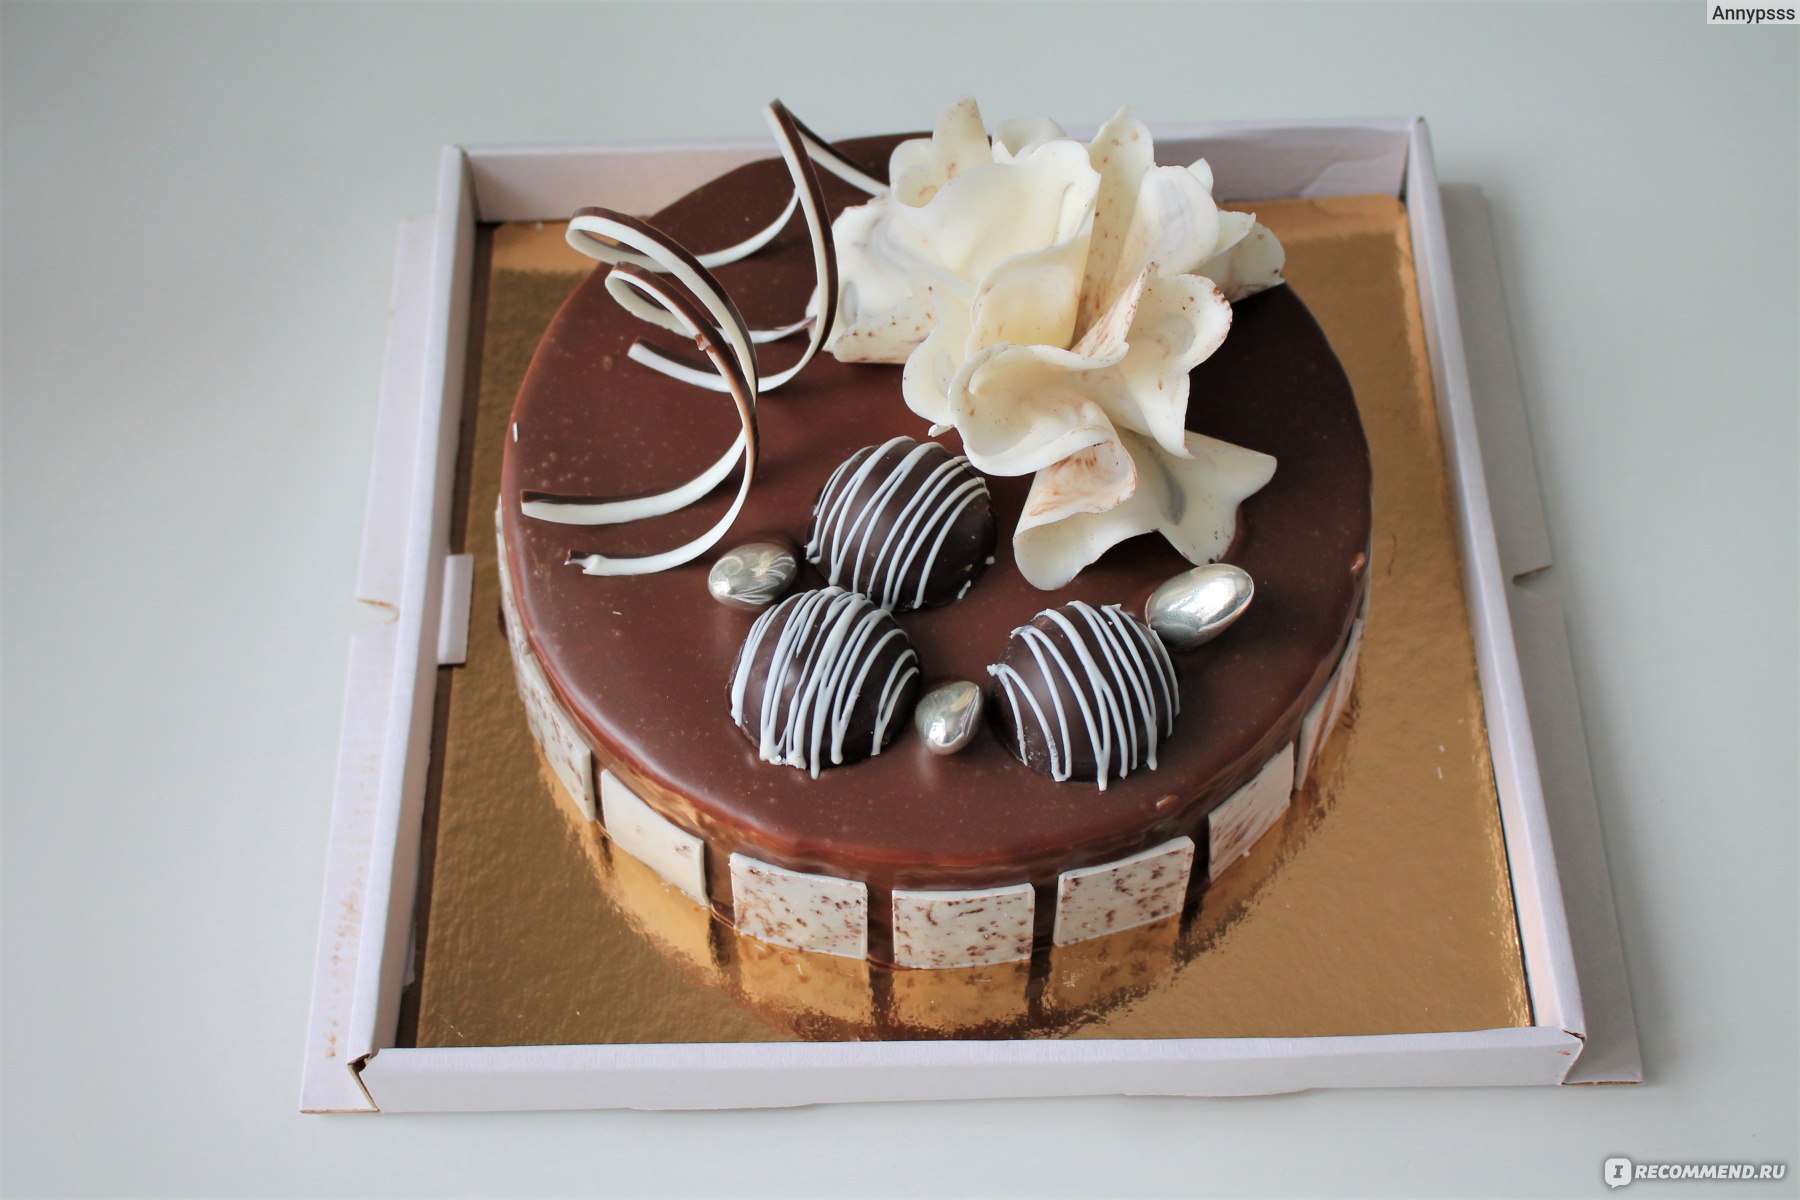 А вот как этот шоколадный декор смотрится на торте.